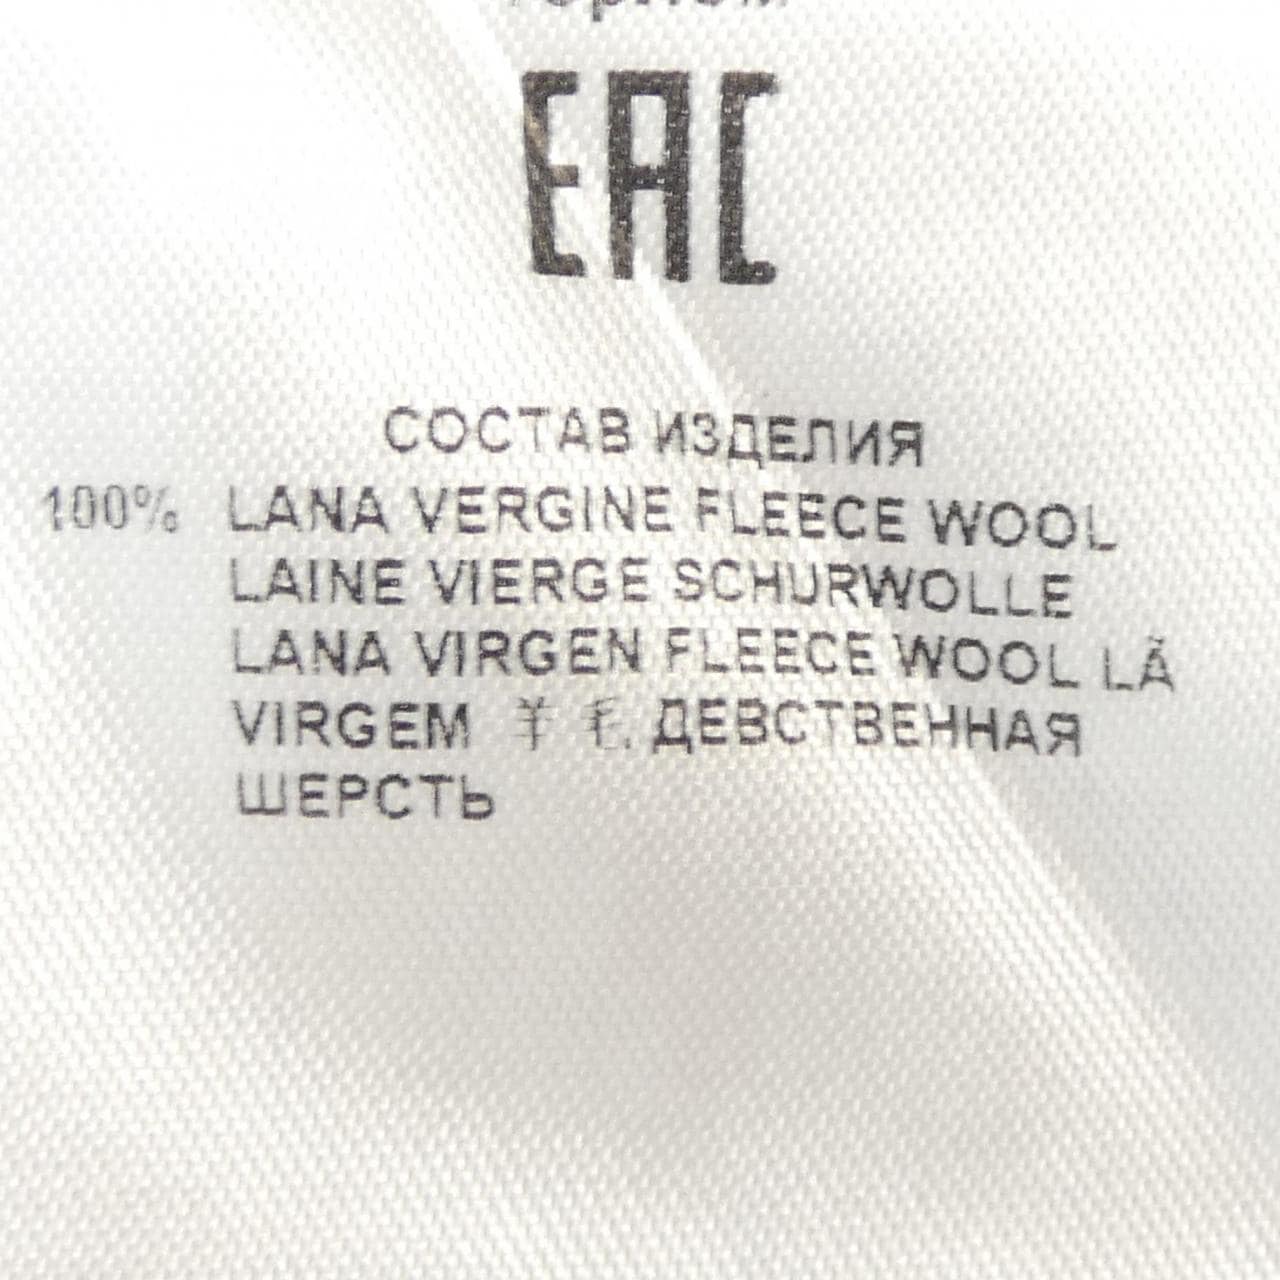 ETRO针织衫